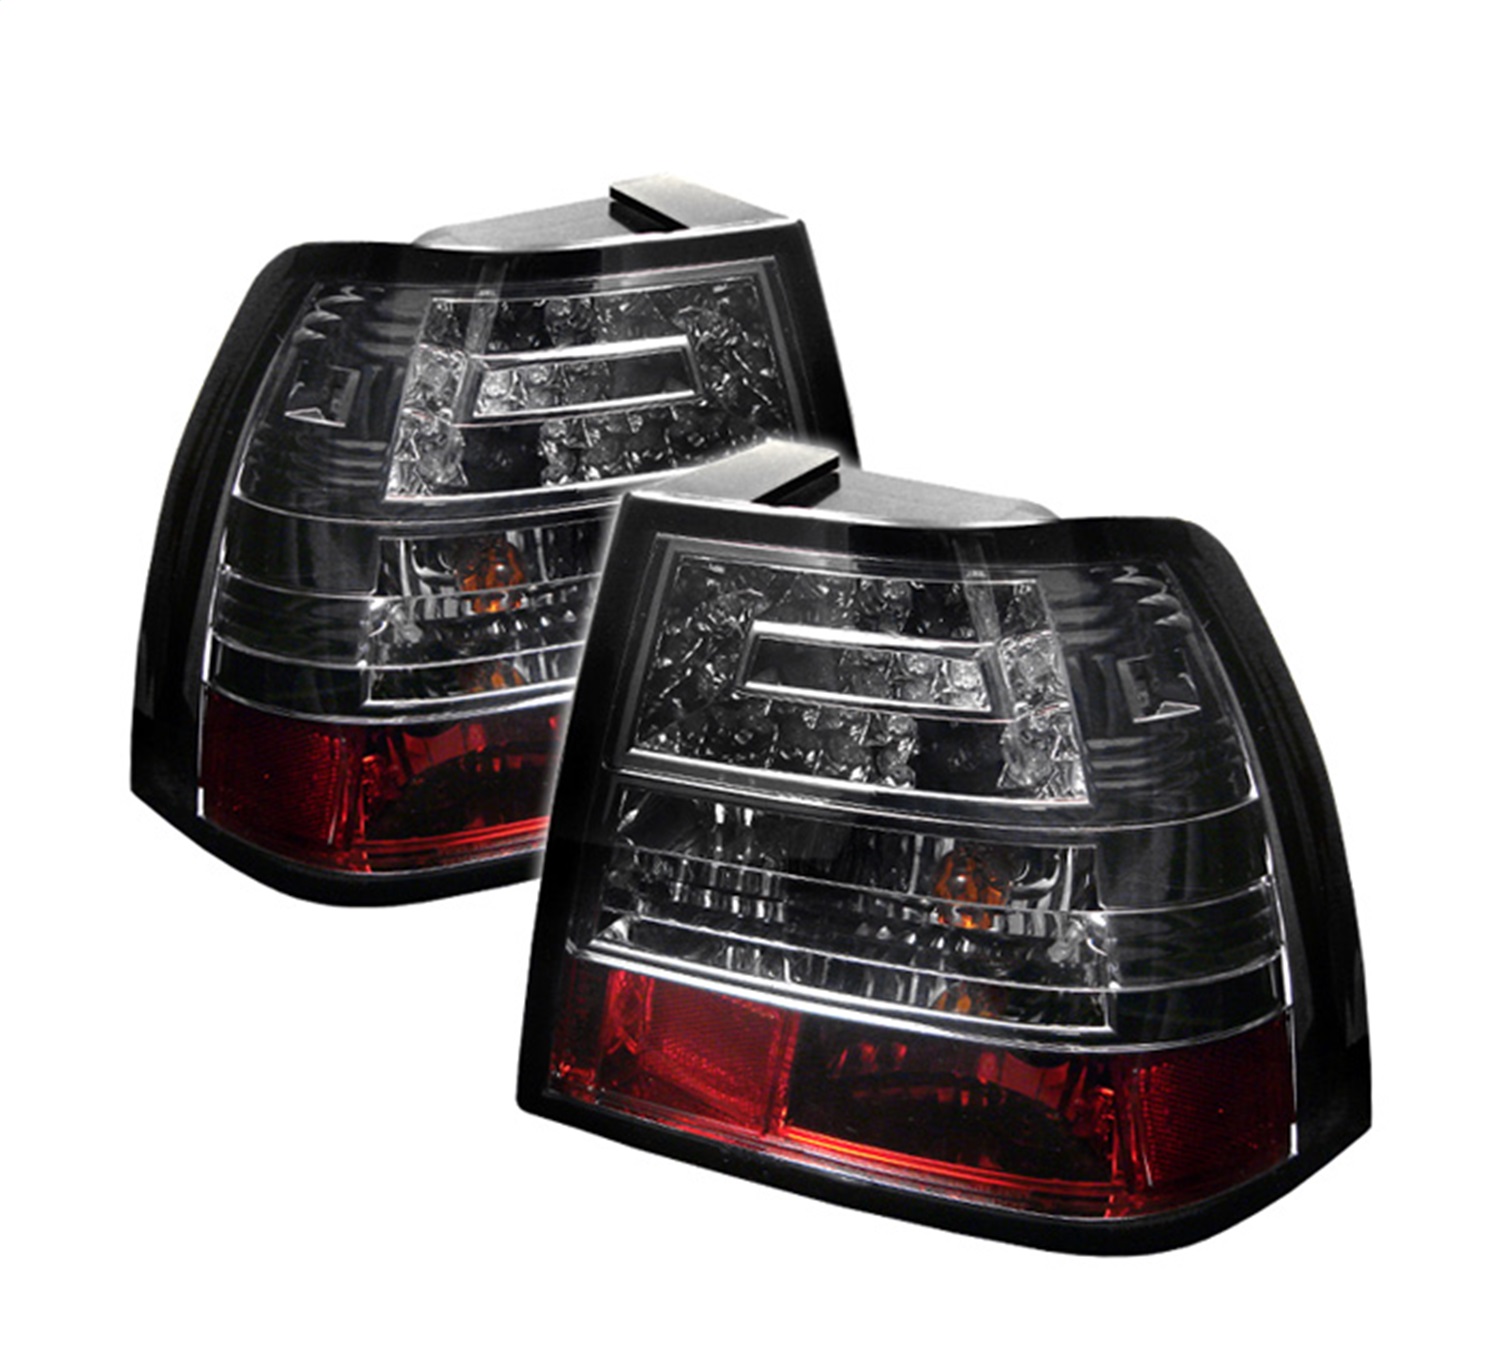 Spyder Auto 5008435 LED Tail Lights Fits 99-04 Jetta